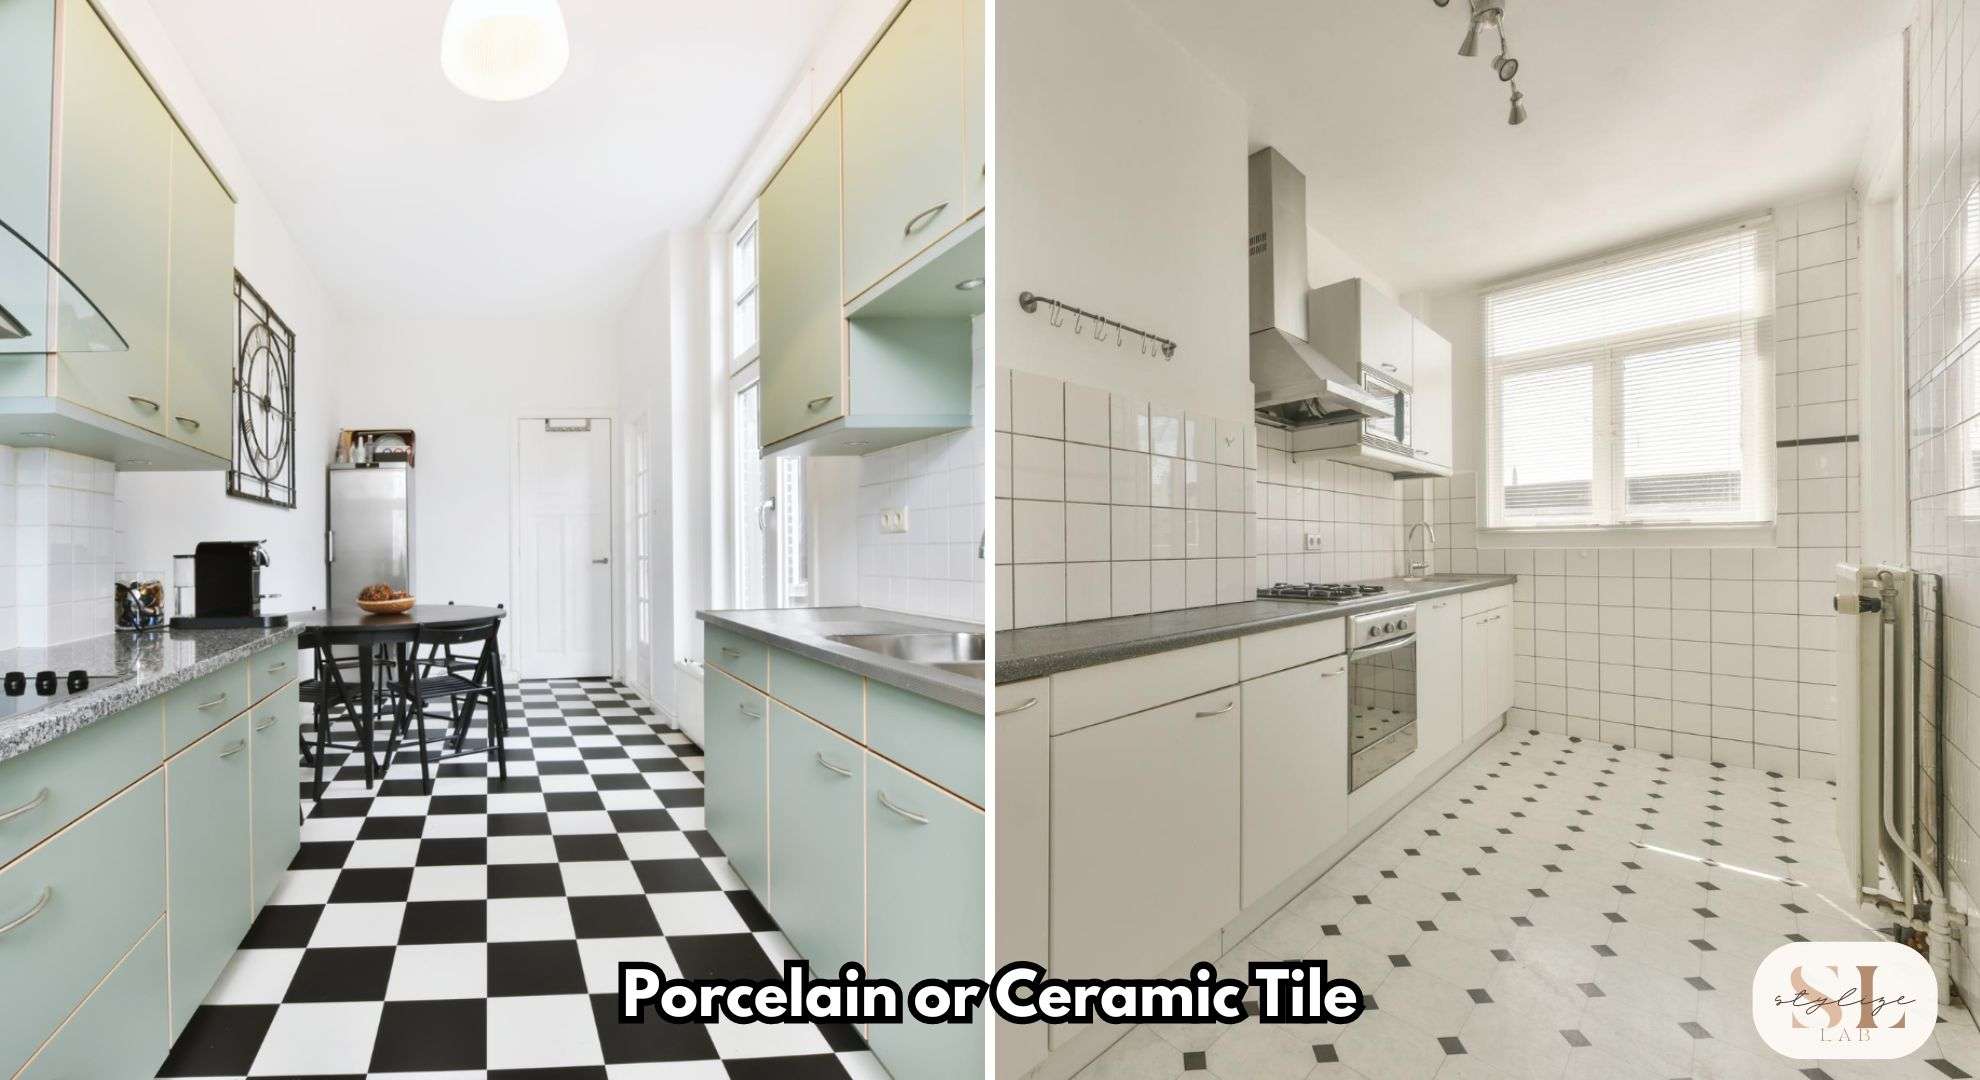 Porcelain or Ceramic Tile - kitchen shapes flooring